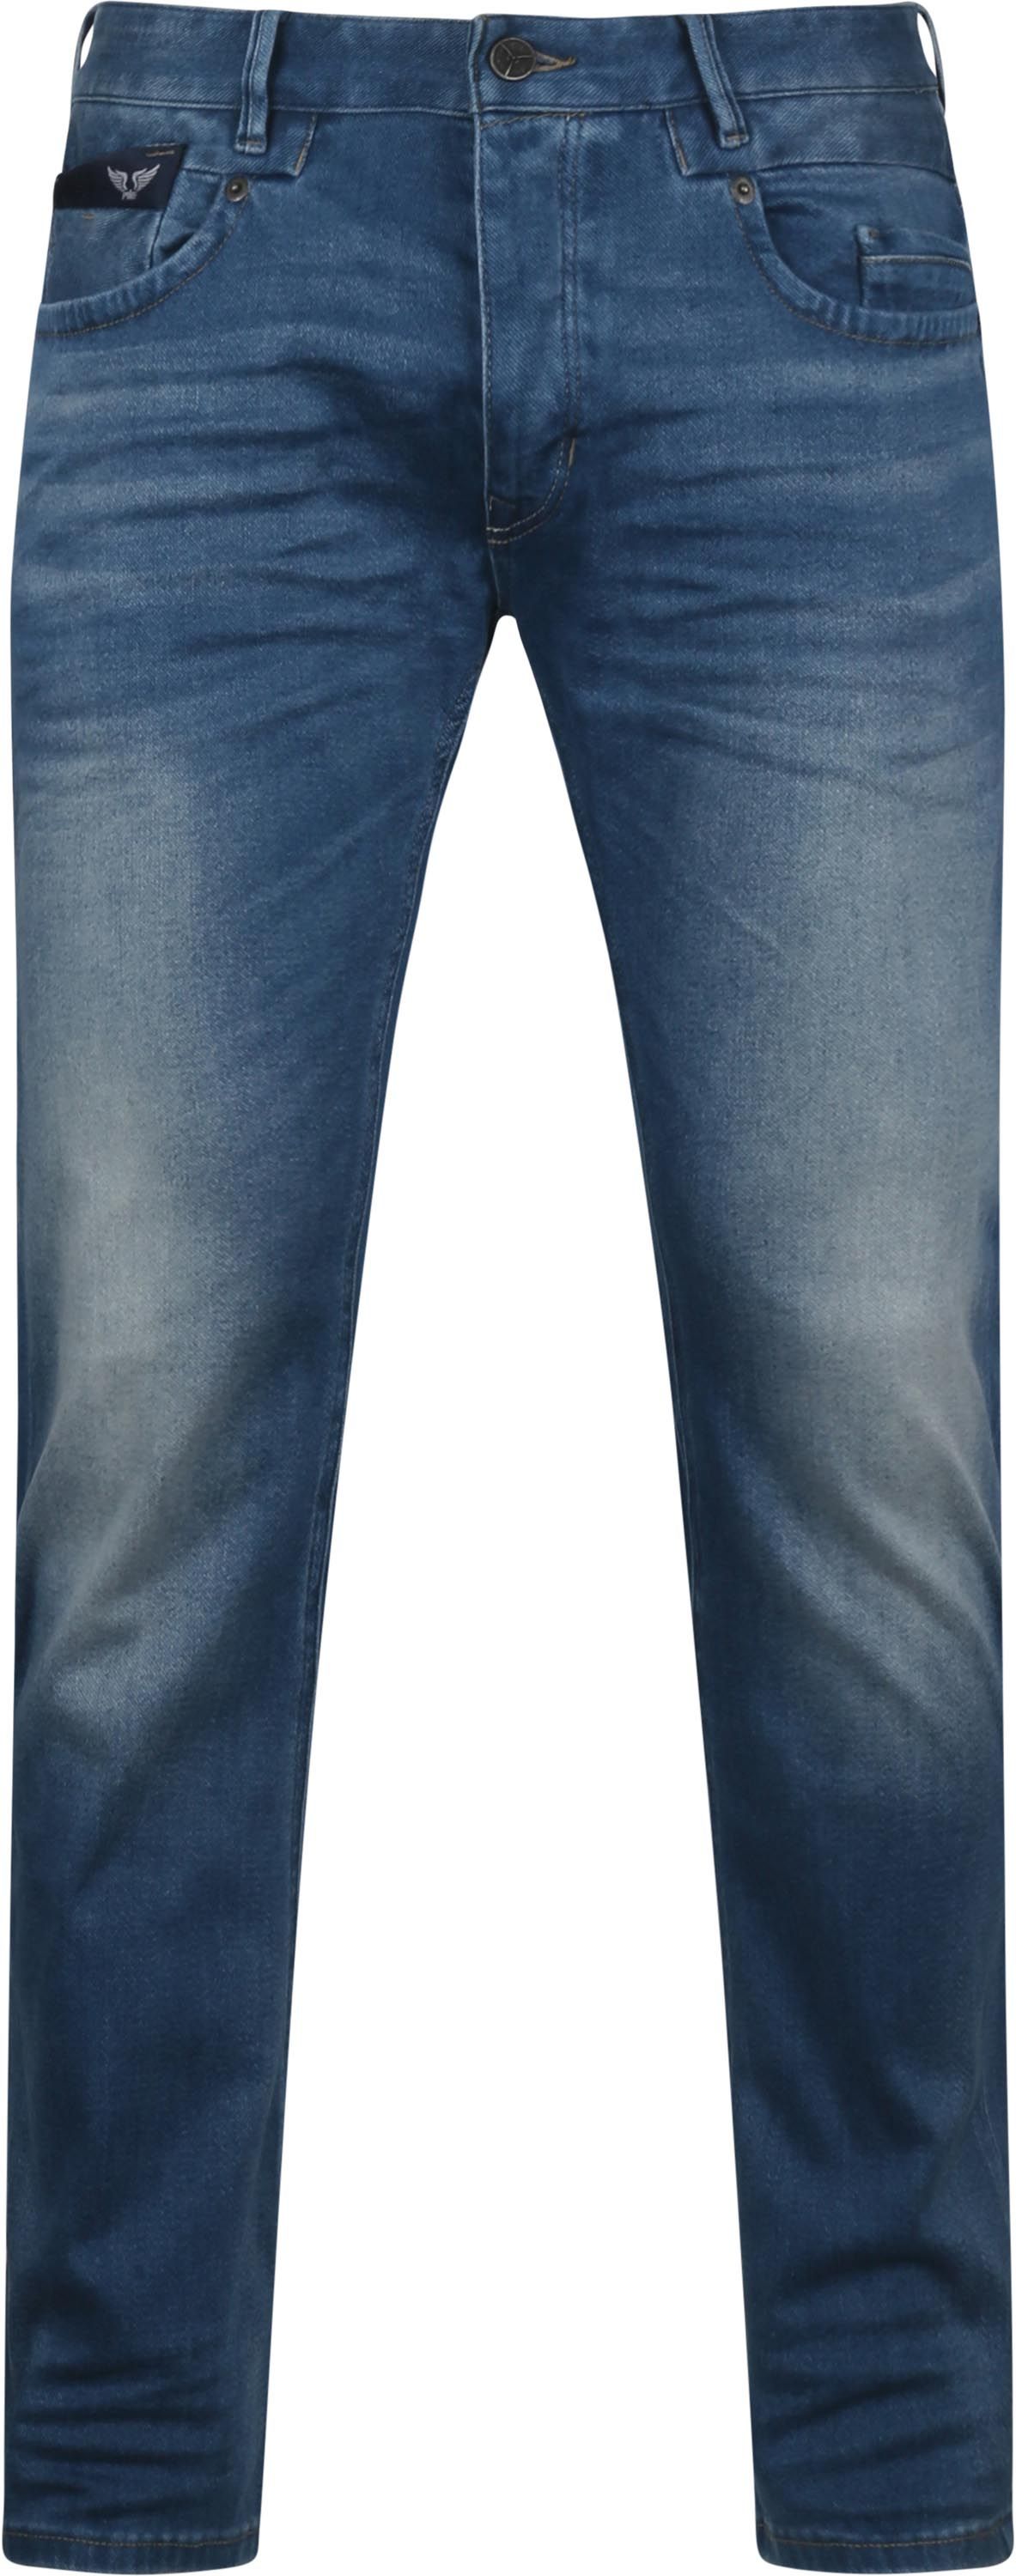 PME Legend Commander 3.0 BDS Jeans Blue size W 31